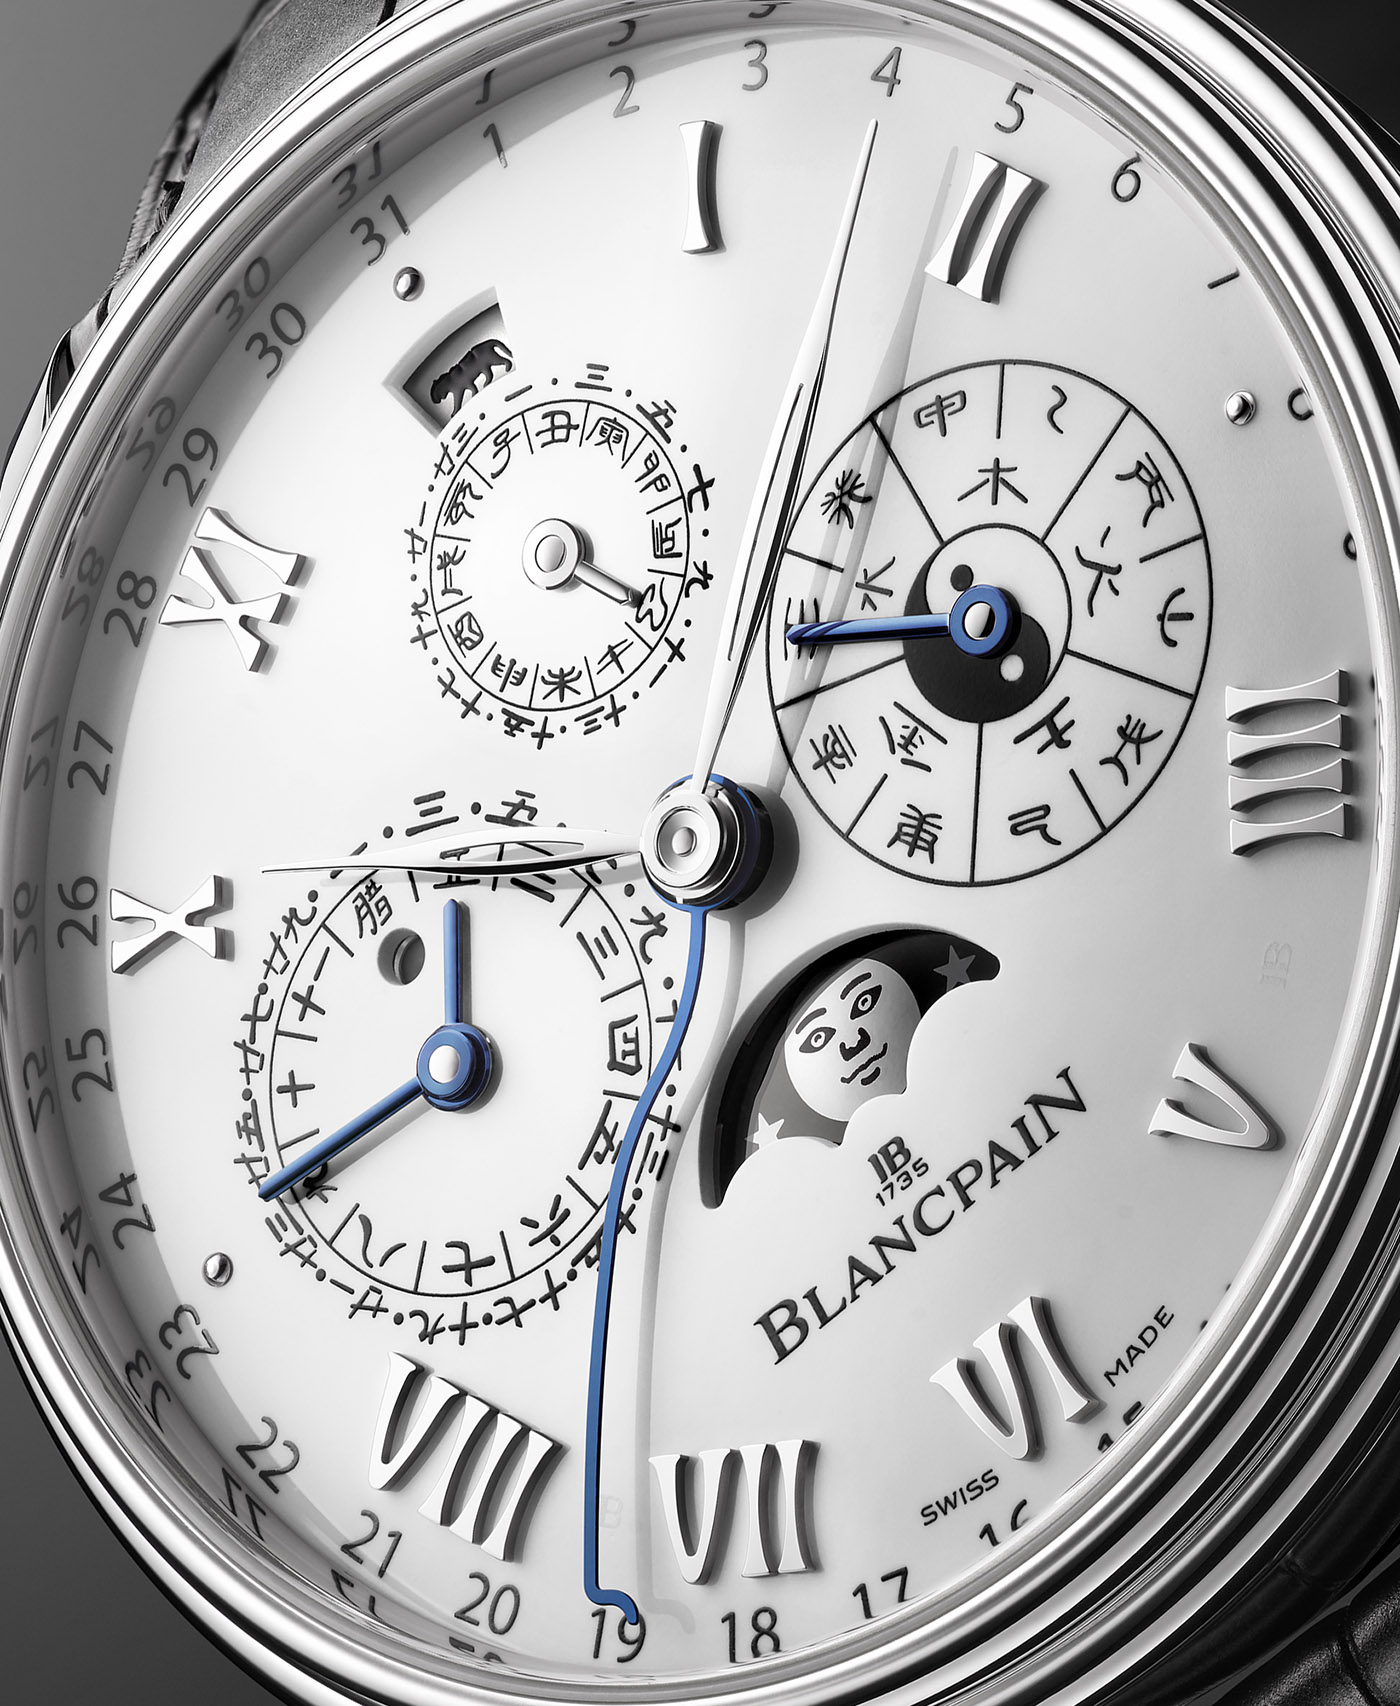 Blancpain выпускает лимитированную серию часов Villeret с традиционным китайским календарем